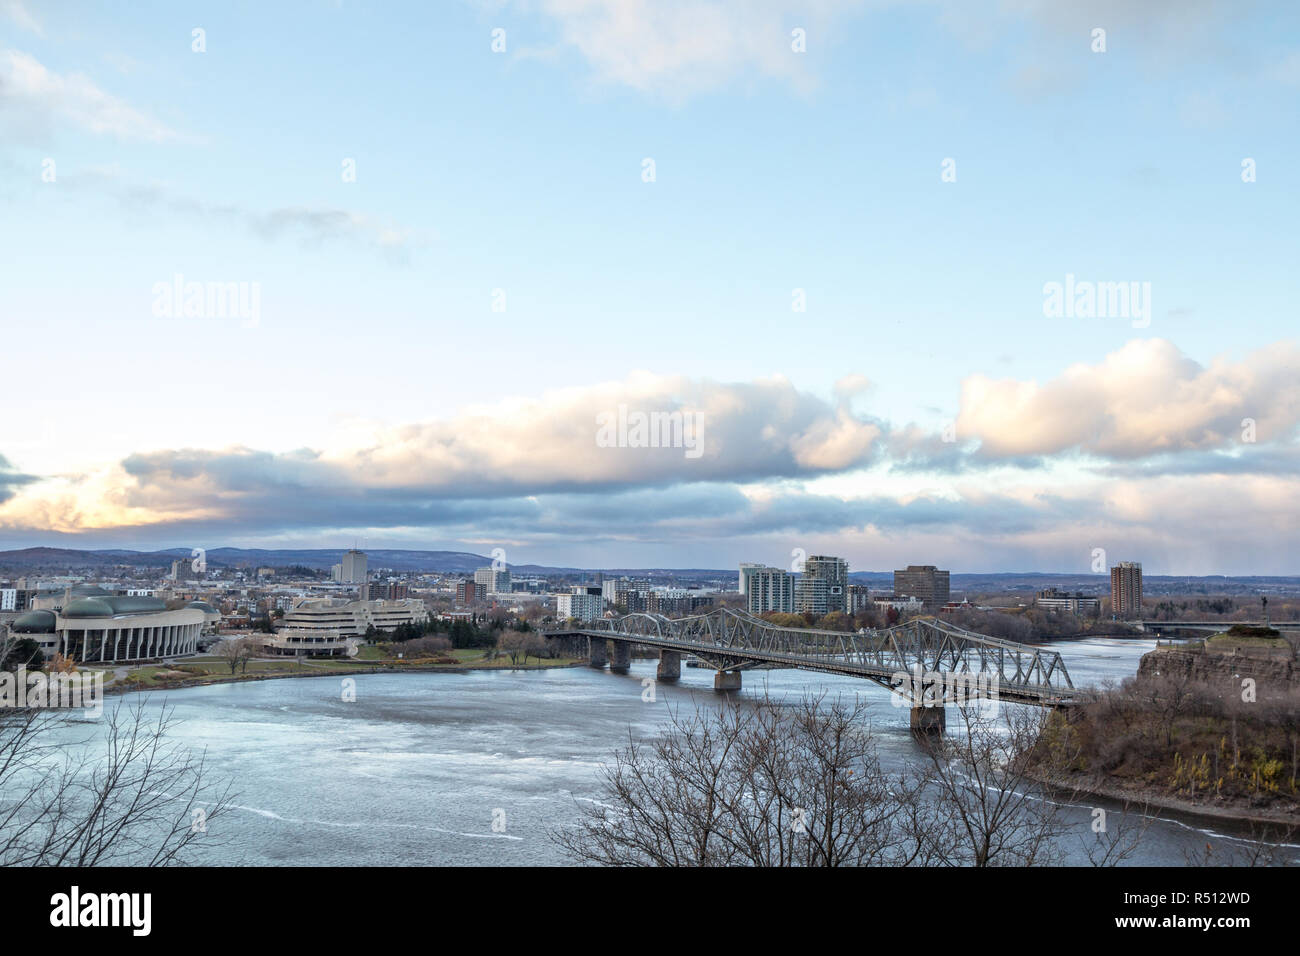 Panorama von Gatineau Hull, Quebec, Ottawa, Ontario, und der outaouais Fluss, mit den ikonischen Alexandra Brücke vor bei Sonnenuntergang. Gatineau i Stockfoto